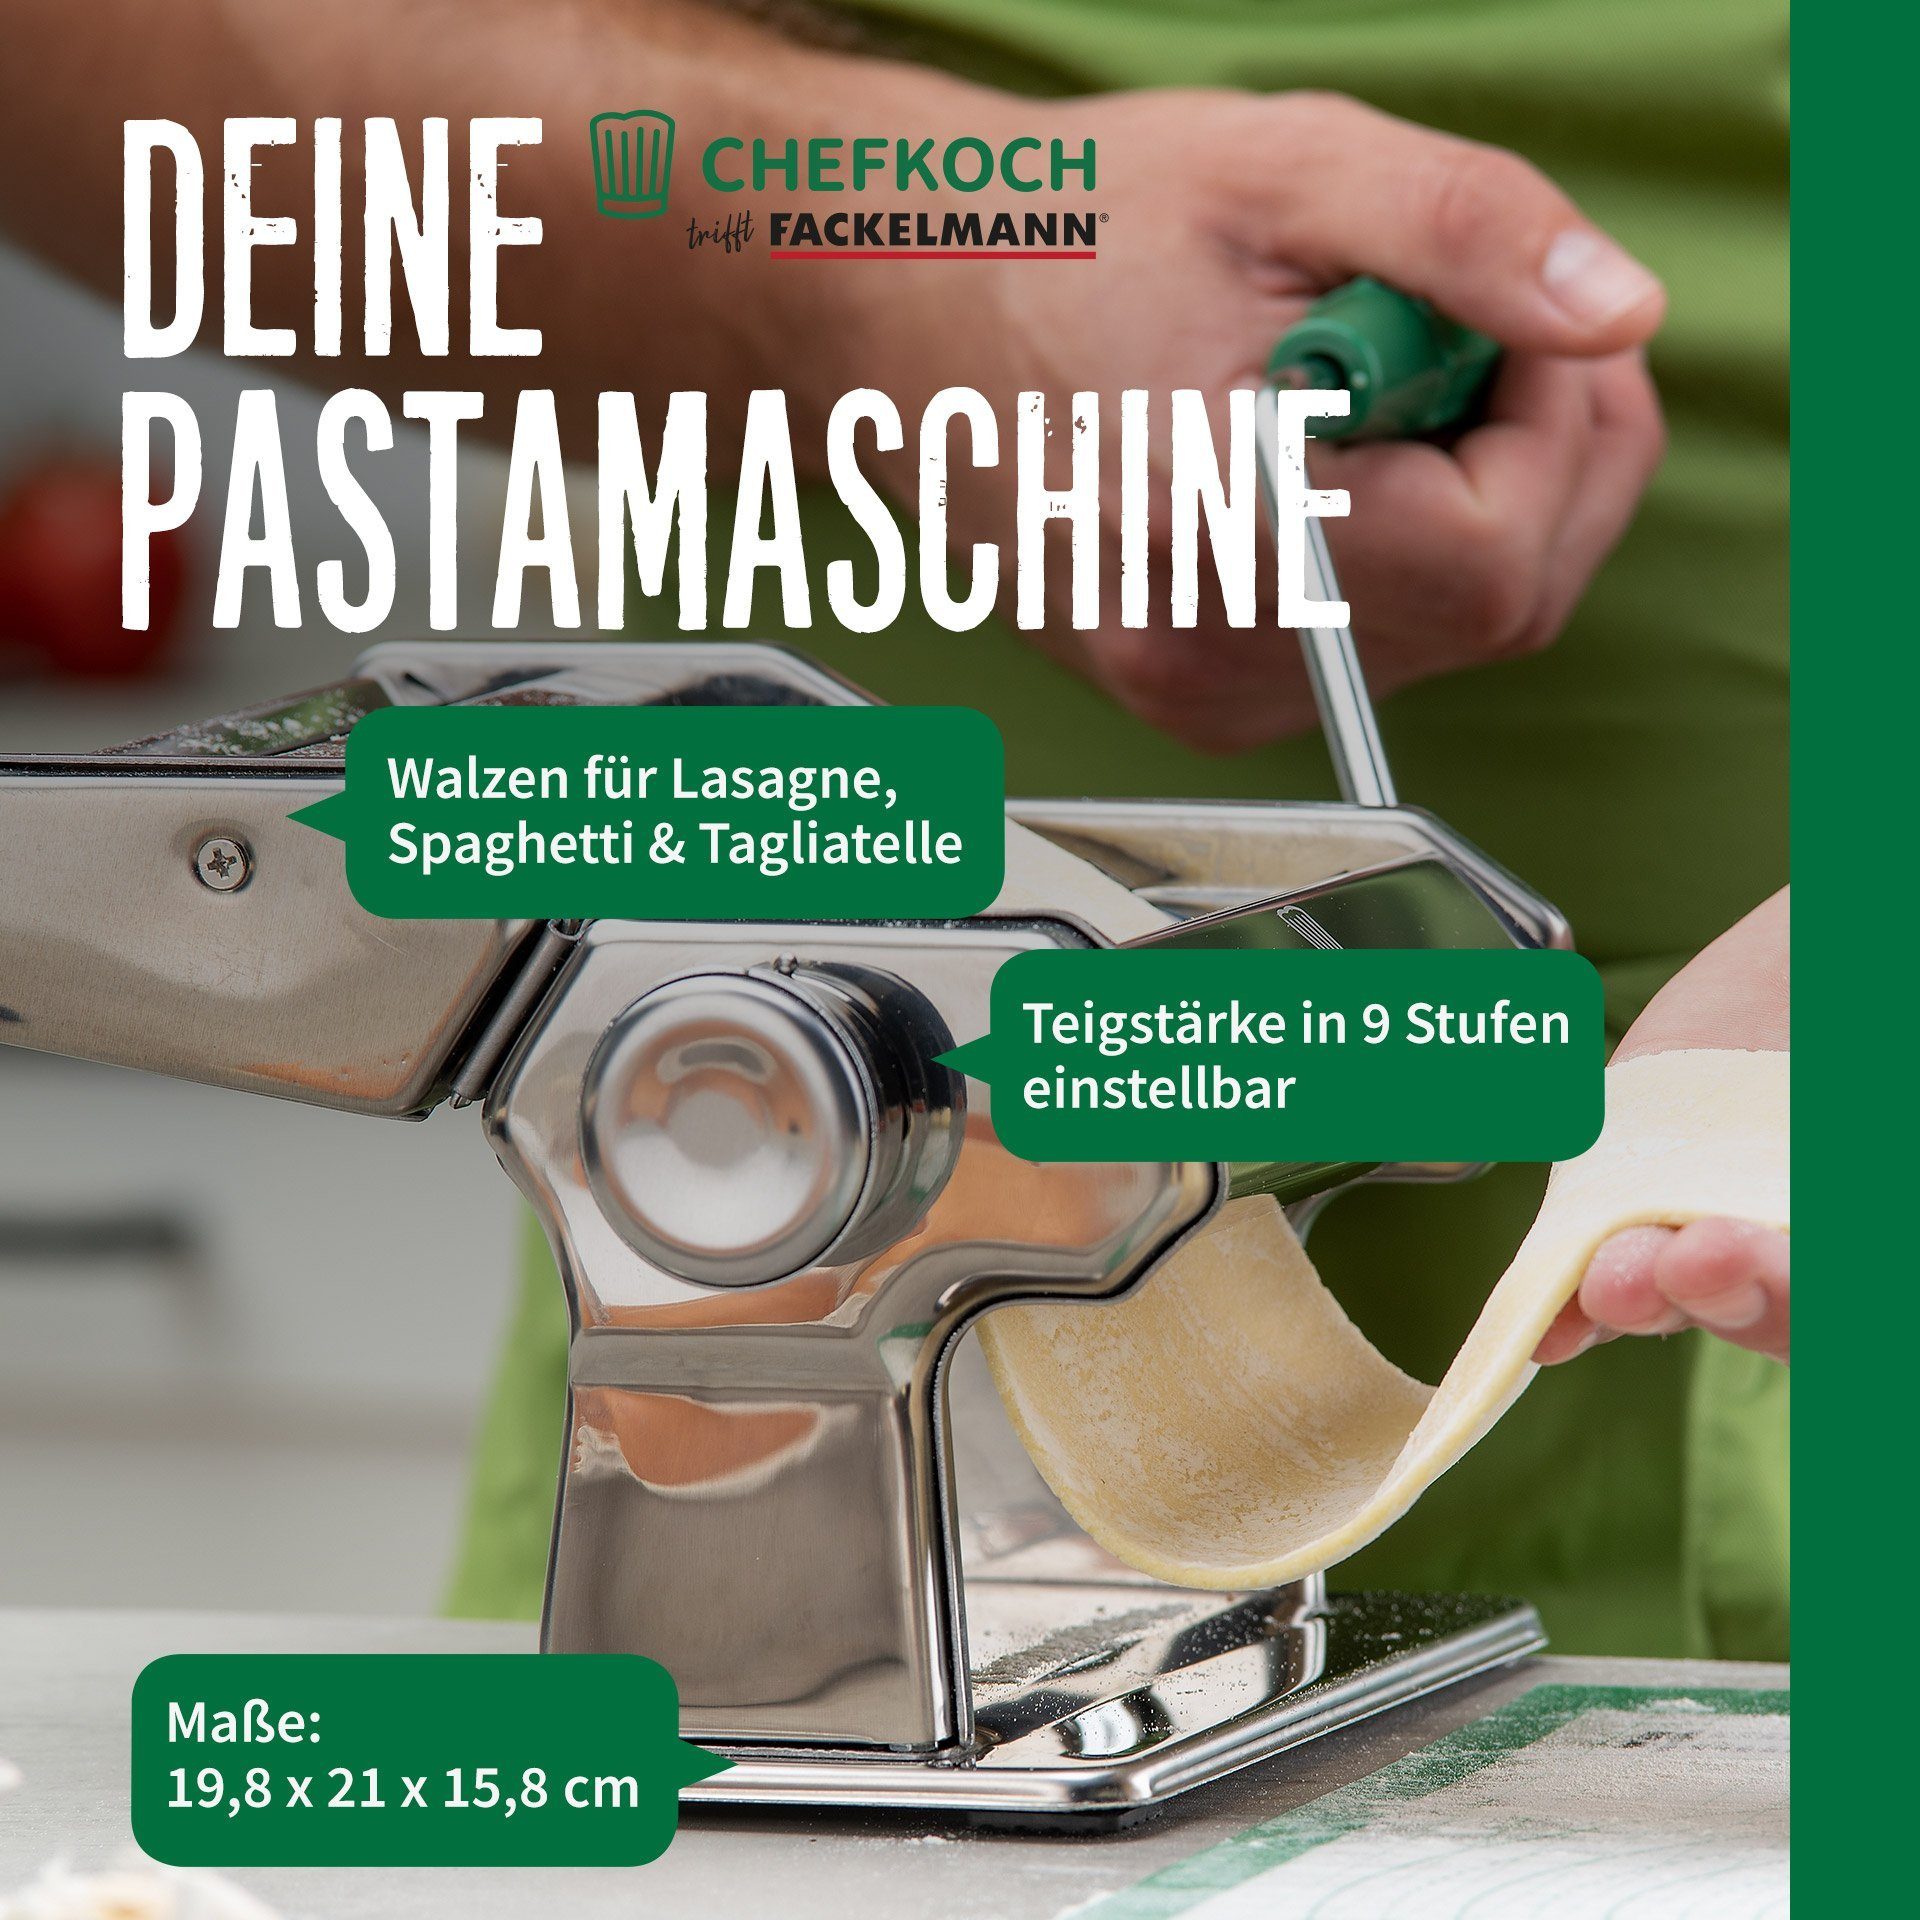 Chefkoch Nudelmaschine trifft Fackelmann